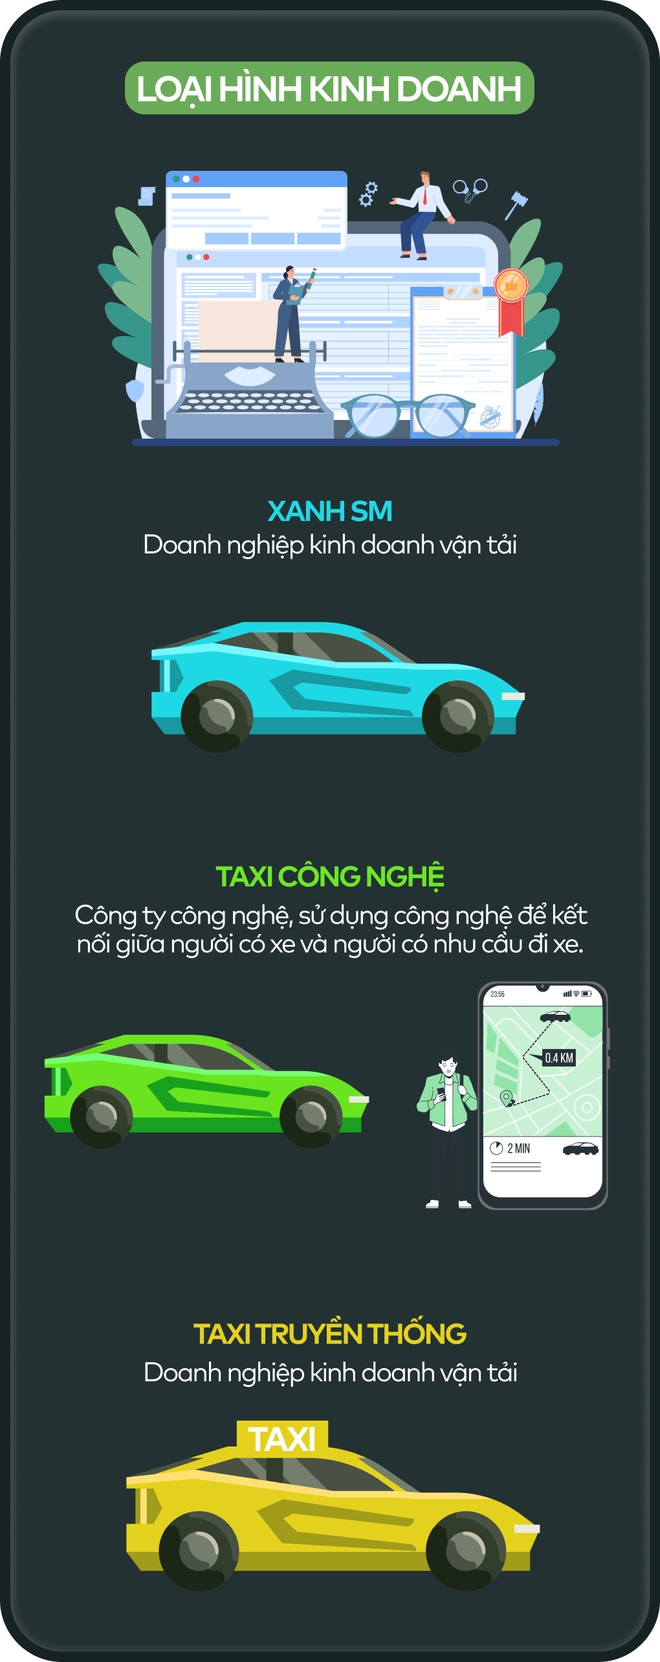 Infographic: So sánh taxi Xanh SM, taxi công nghệ và taxi truyền thống - Ảnh 2.